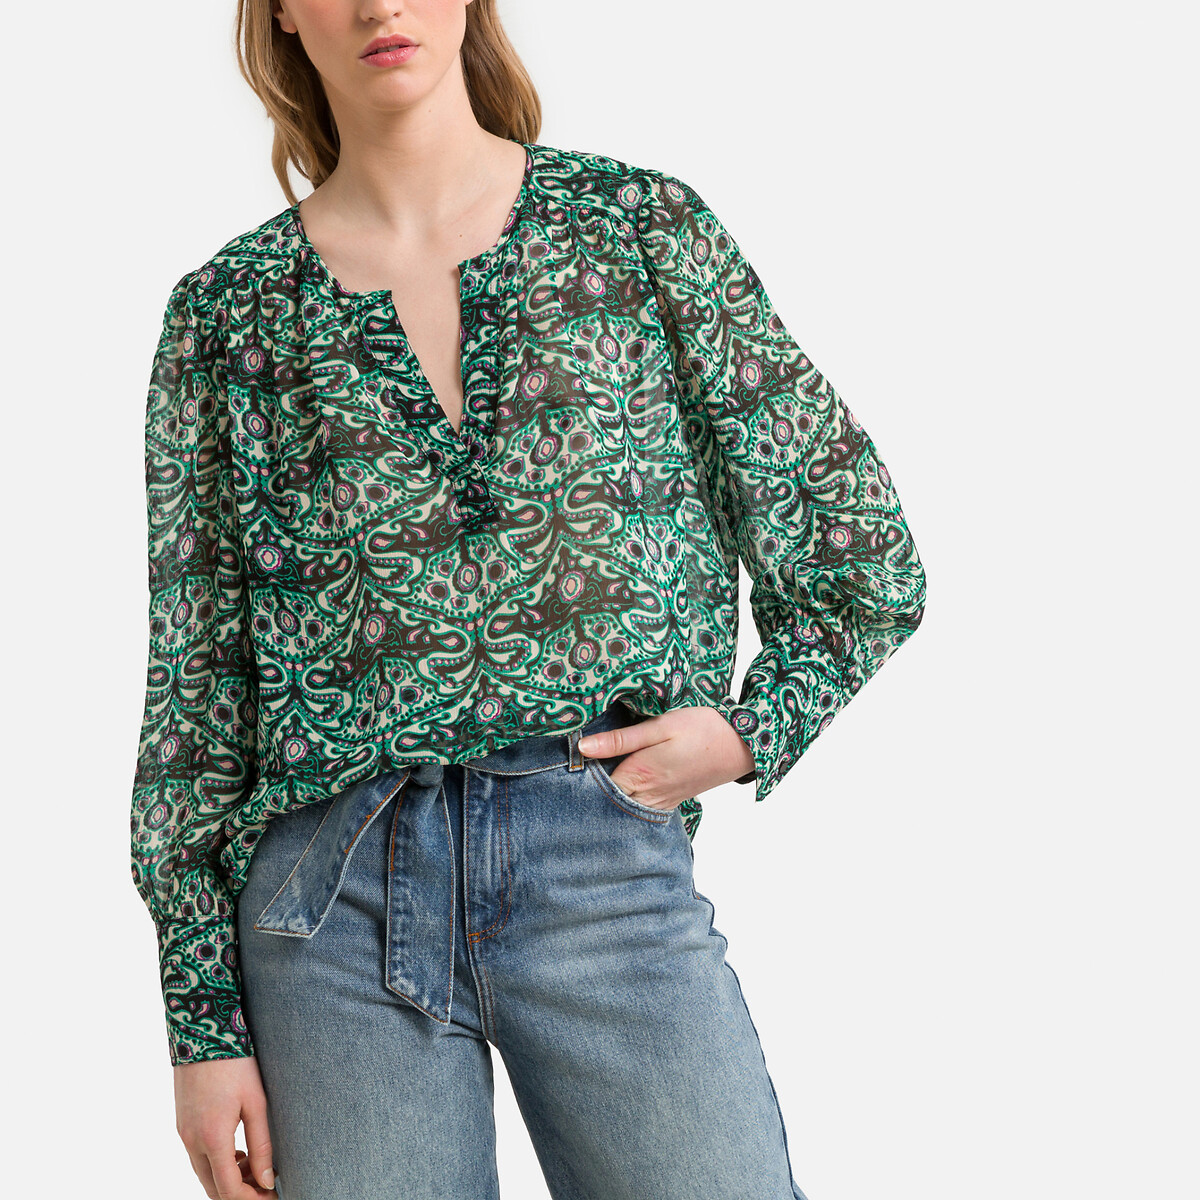 Блузка с принтом и длинными рукавами 2(M) зеленый блузка с принтом и v образным вырезом длинные рукава xs зеленый